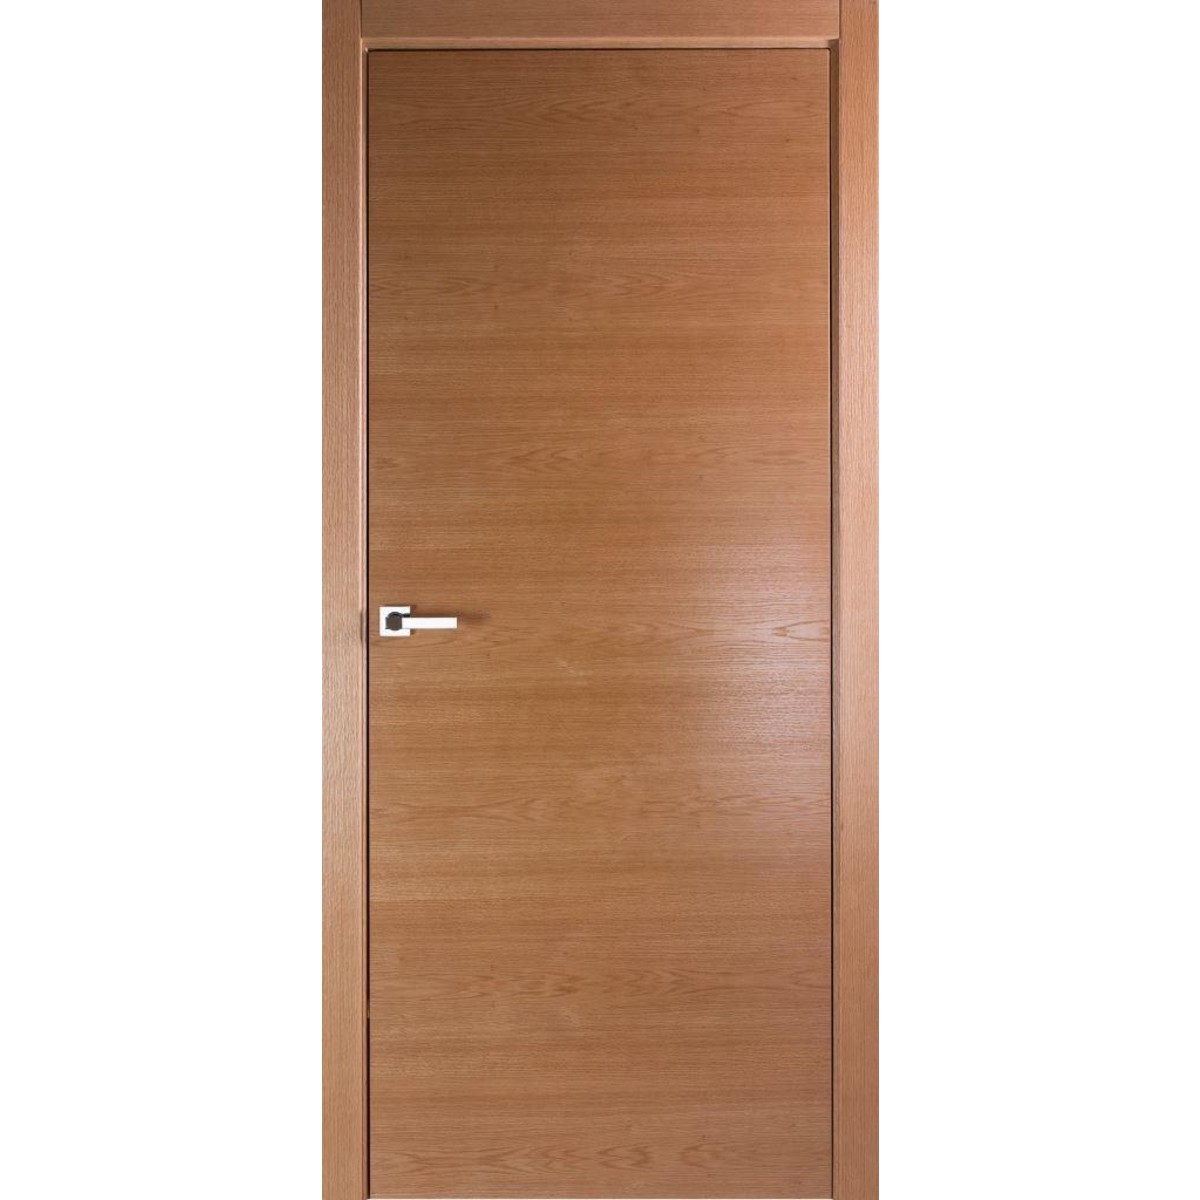 Дверь межкомнатная глухая без замка и петель в комплекте Лофтвуд 2 60x200 см шпон цвет дуб американский